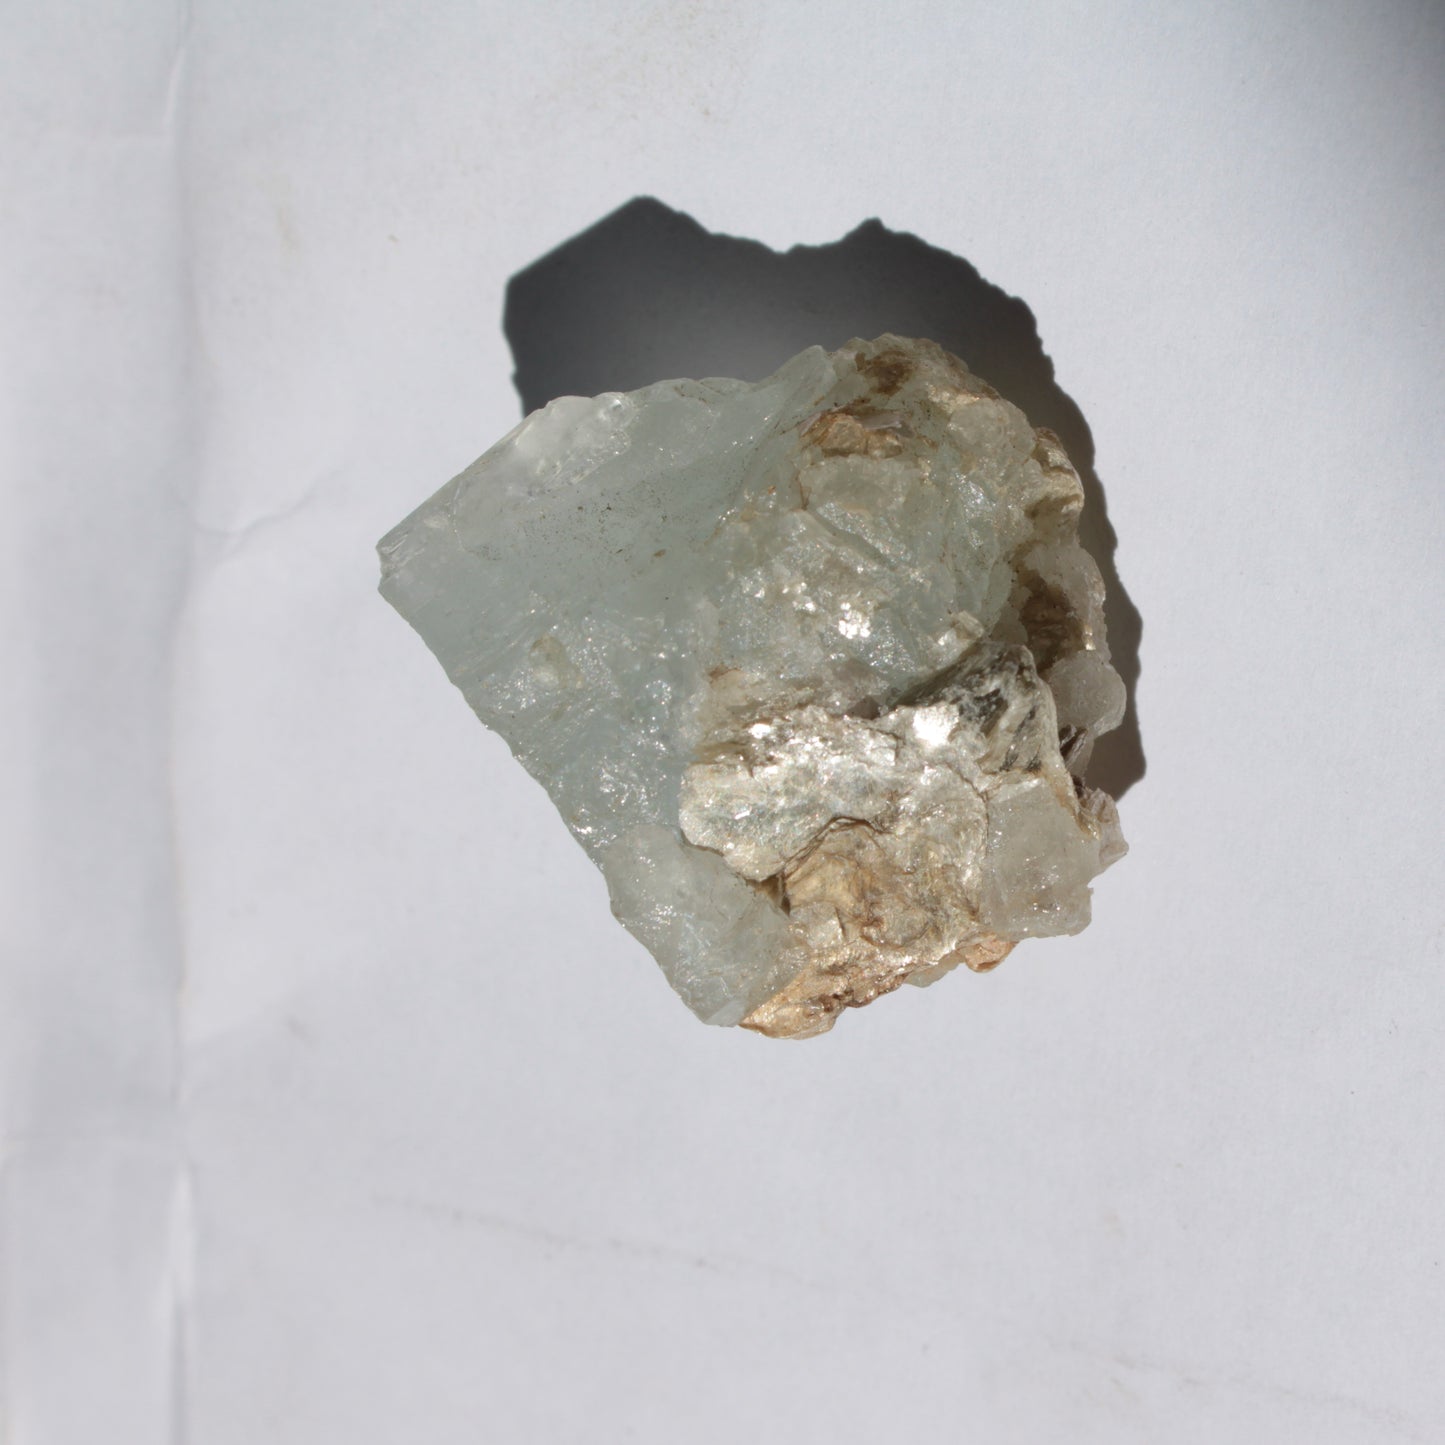 Blue Aquamarine crystal 19.9g